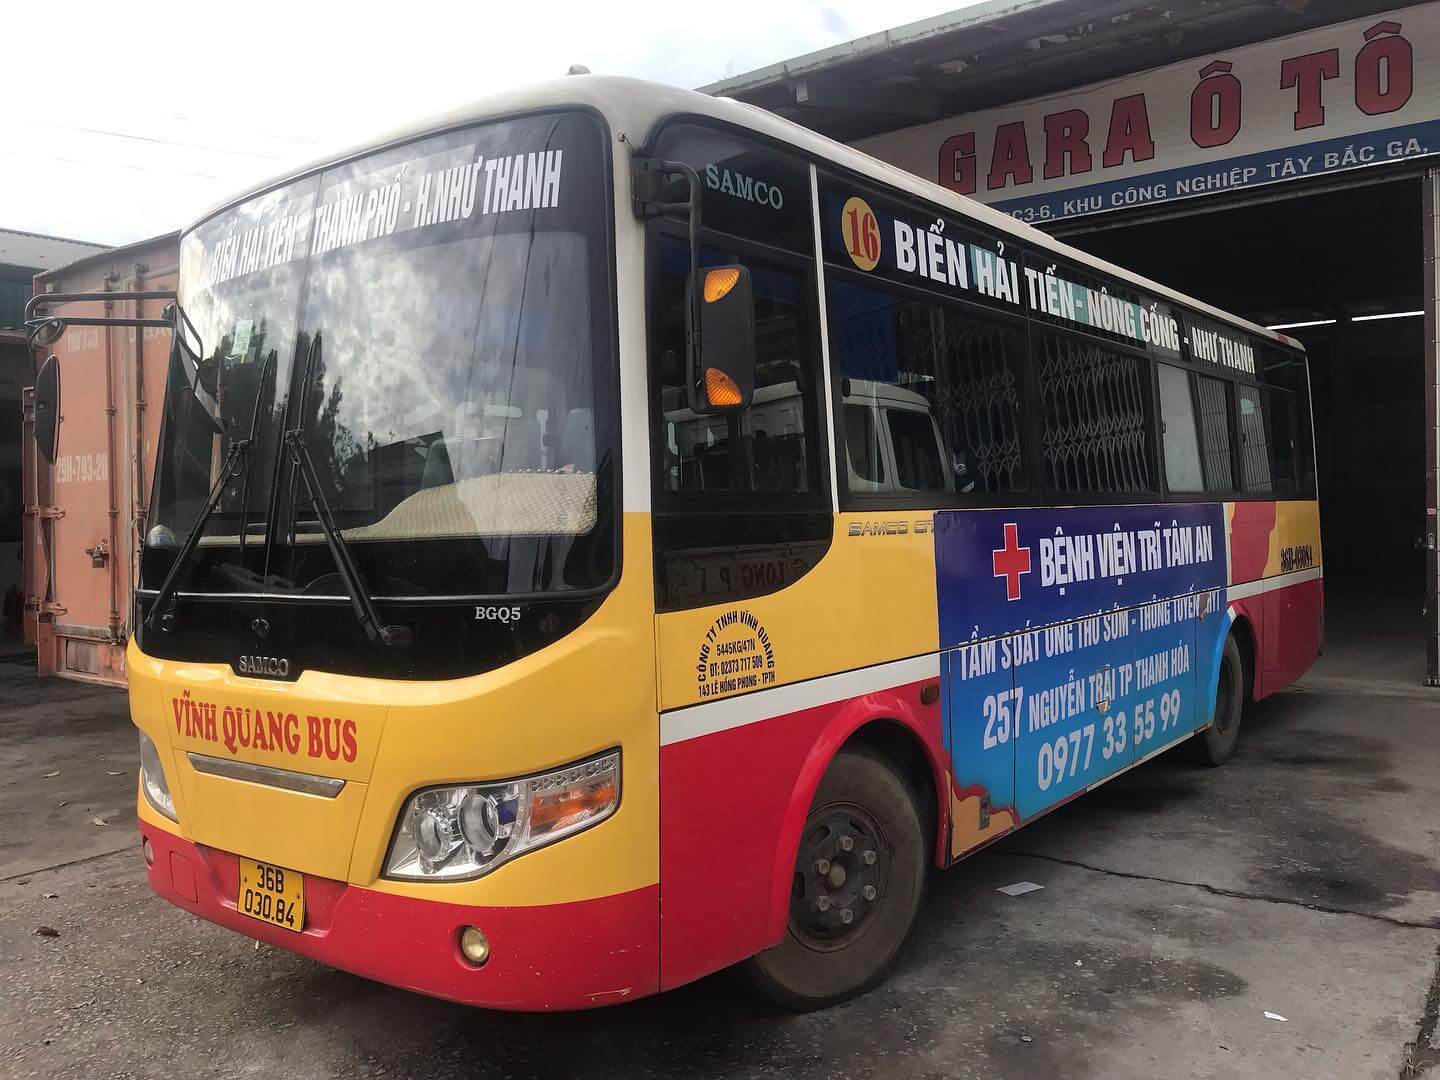 Vĩnh Quang Bus